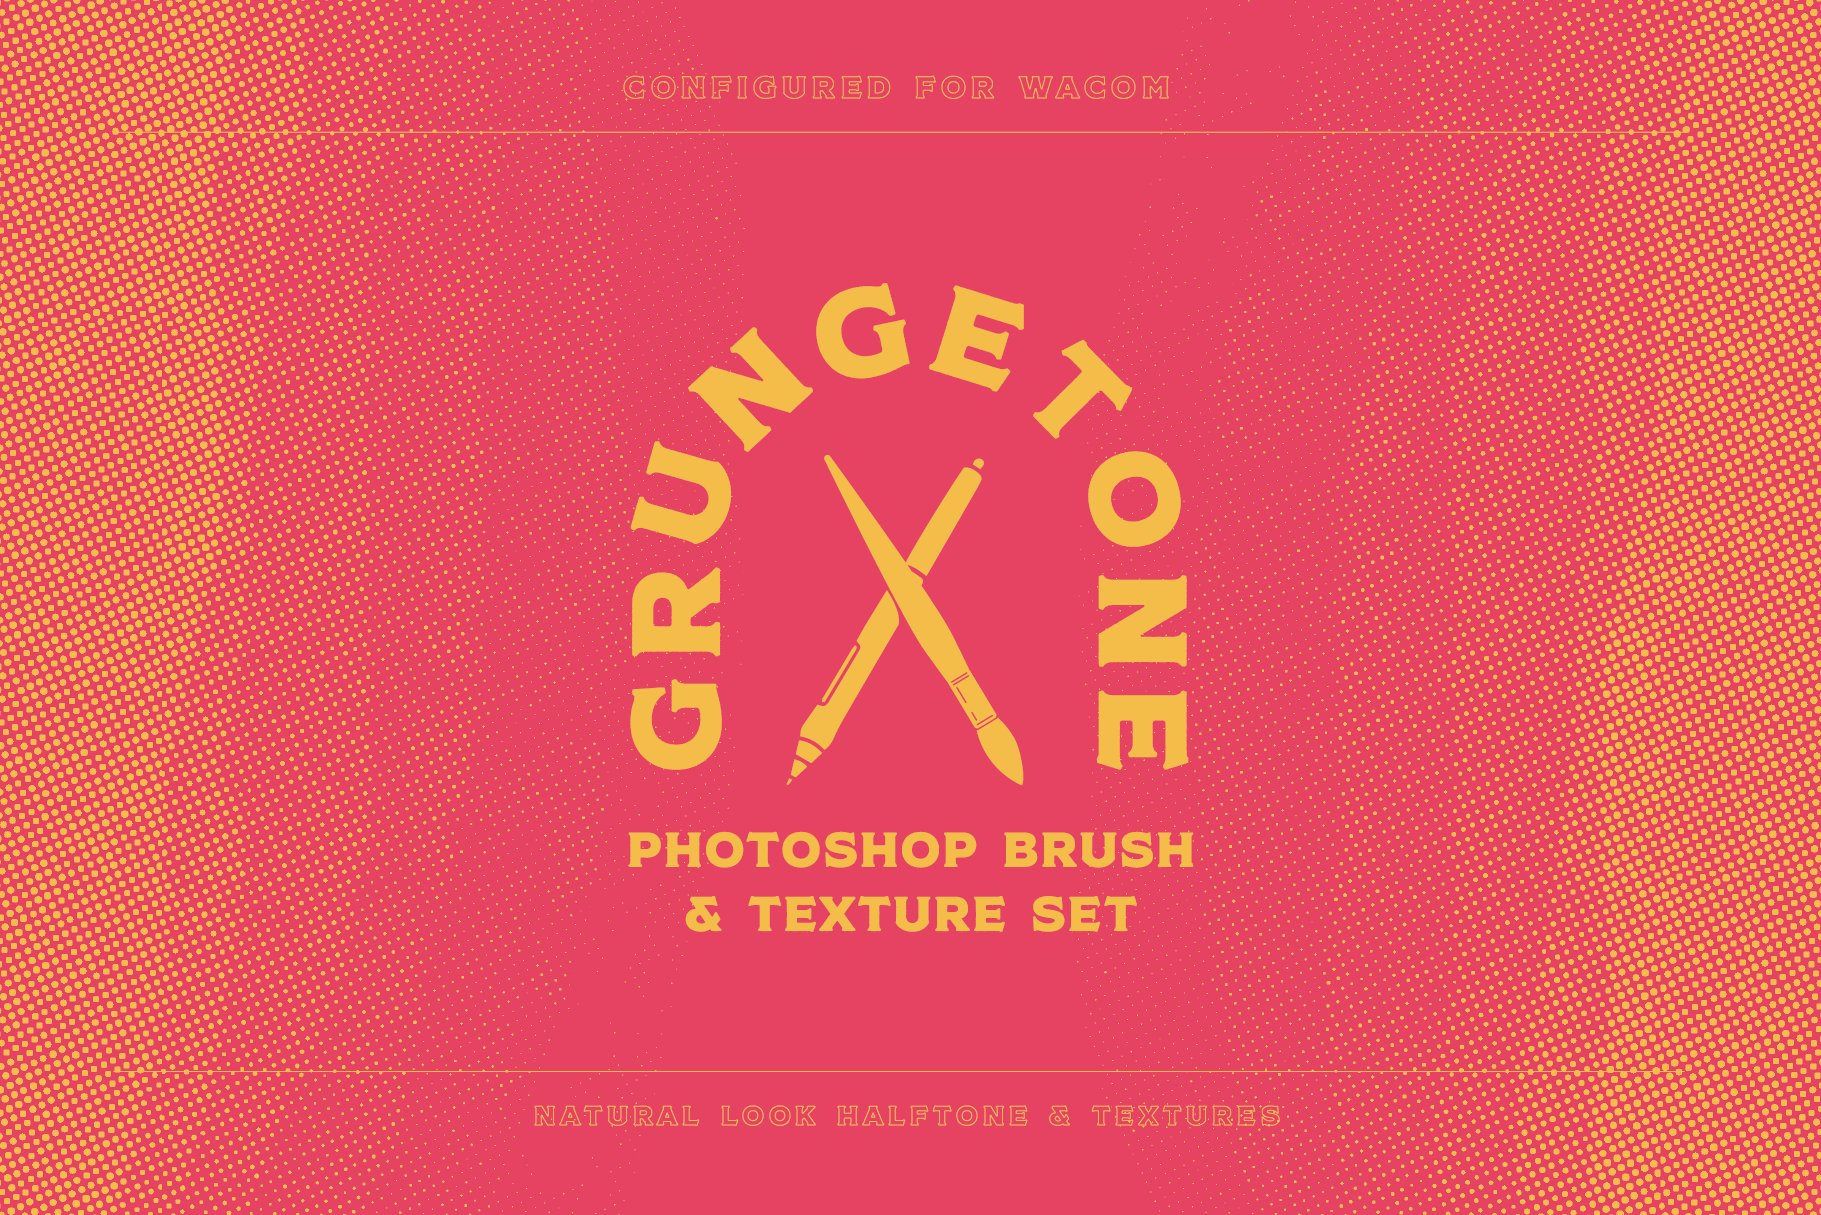 Grungetone - Halftone Brushescover image.